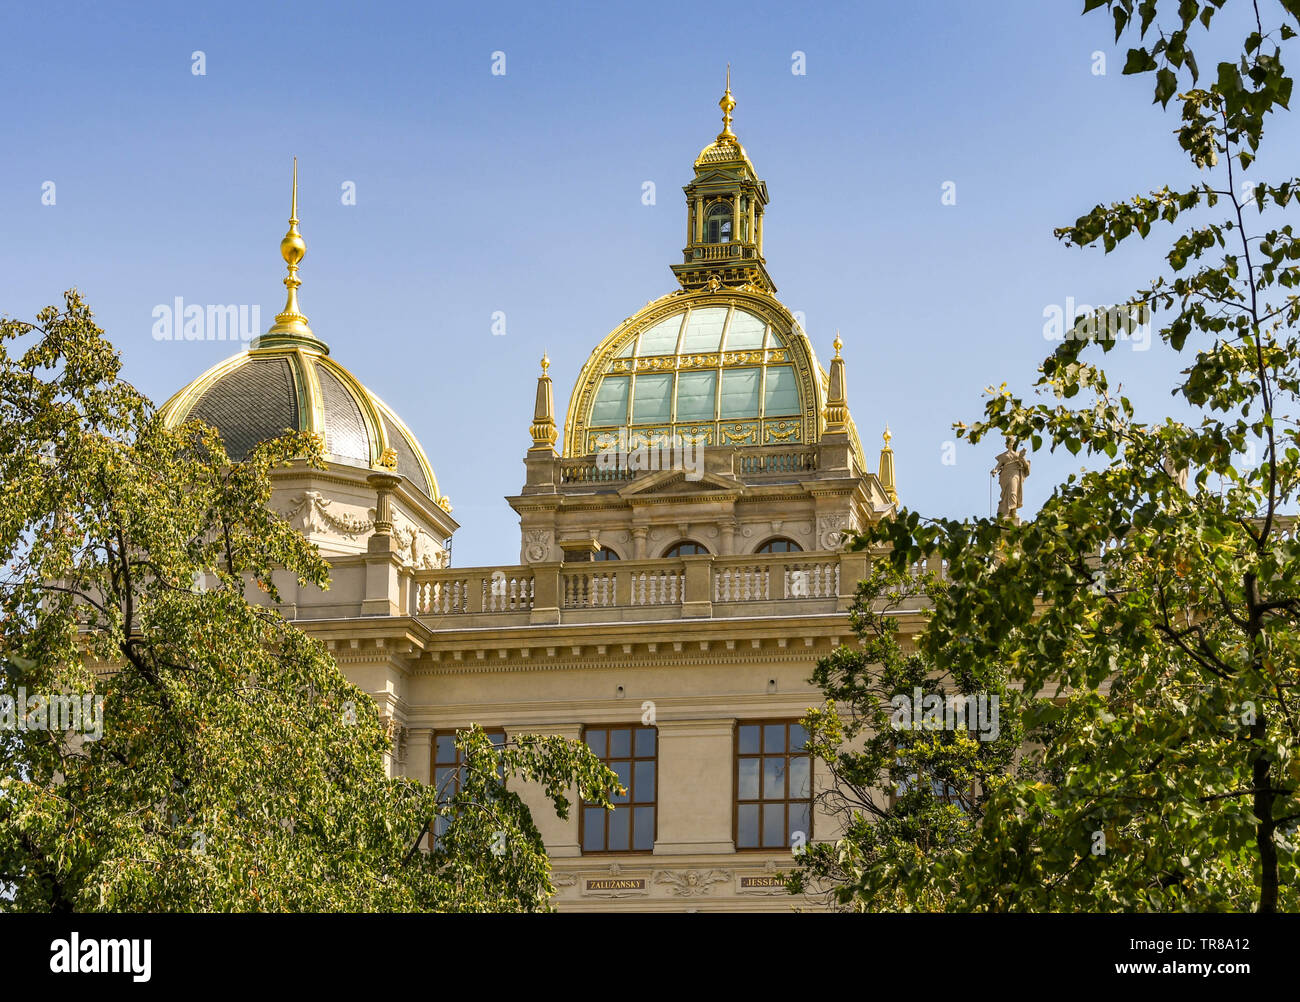 PRAGUE, RÉPUBLIQUE TCHÈQUE - Juillet 2018 : extérieur du Musée National de Prague. Il a été créé en 1818 par Kašpar Maria Šternberg. Banque D'Images